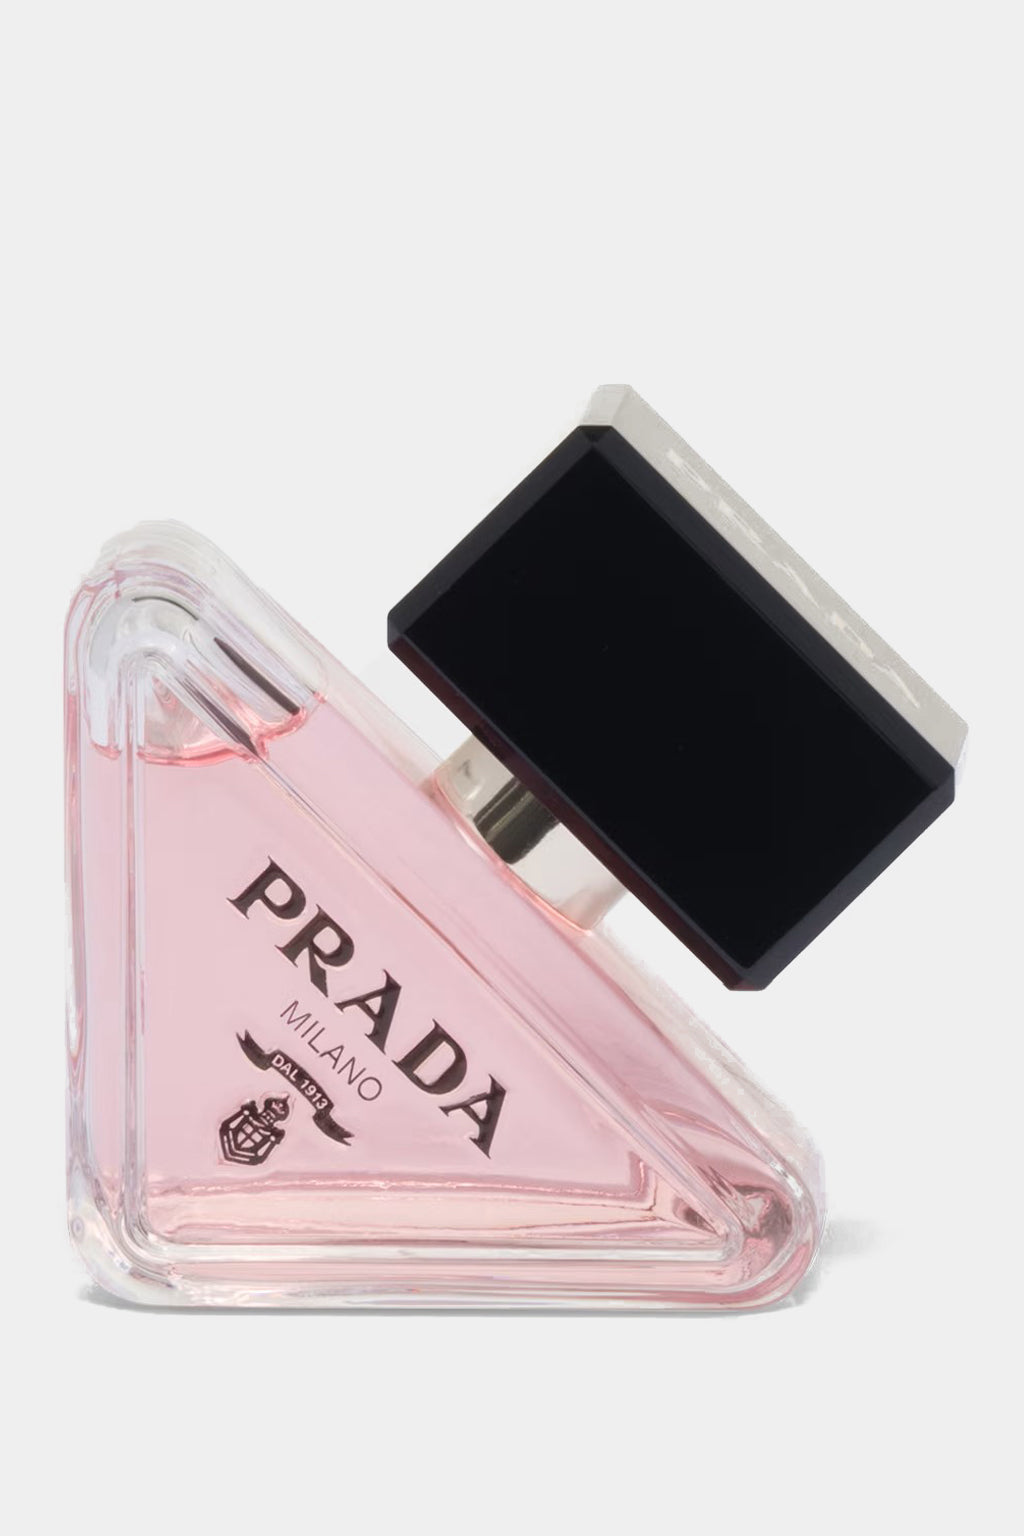 Prada - Paradoxe Eau de Parfum